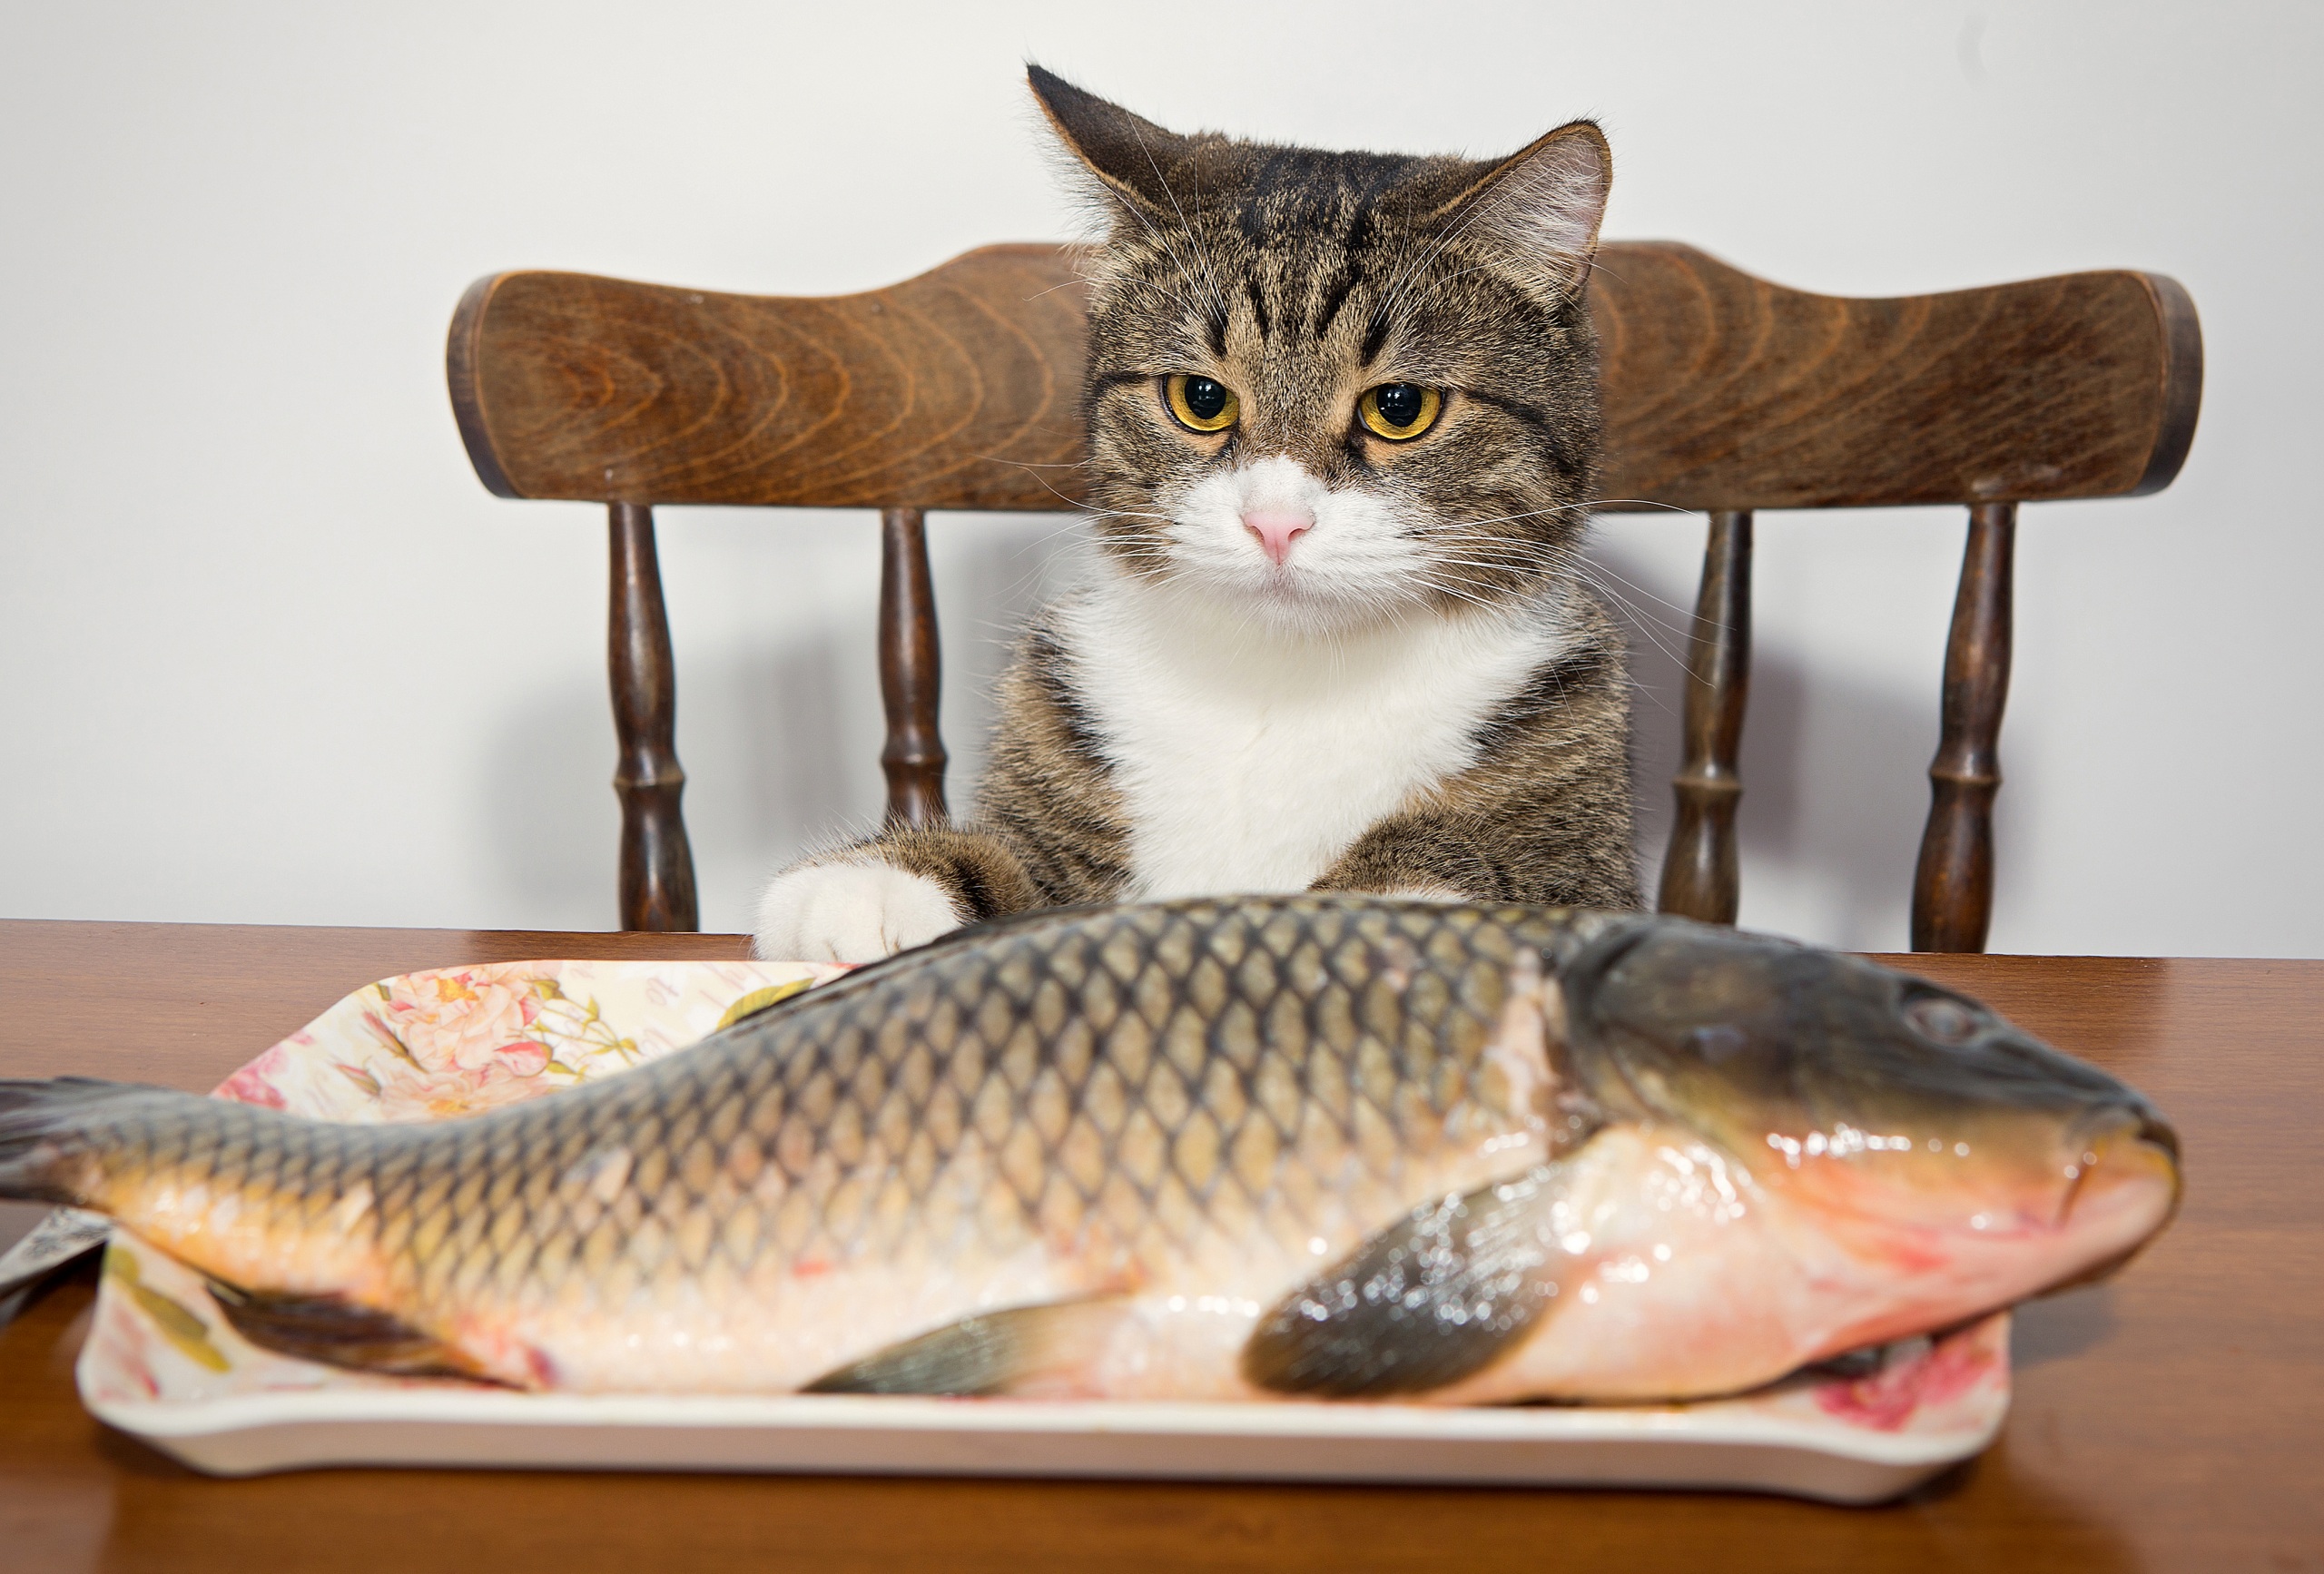 можно ли кошкам рыбу, Значение рыбного мяса в рационе кошки, кормить кошку рыбой, можно кормить кошек рыбой, кошкам можно давать рыбу, можно ли кошкам давать рыбу, можно ли кошкам сырую рыбу, какую рыбу можно кошкам, питание кошек, кормление кошек, 